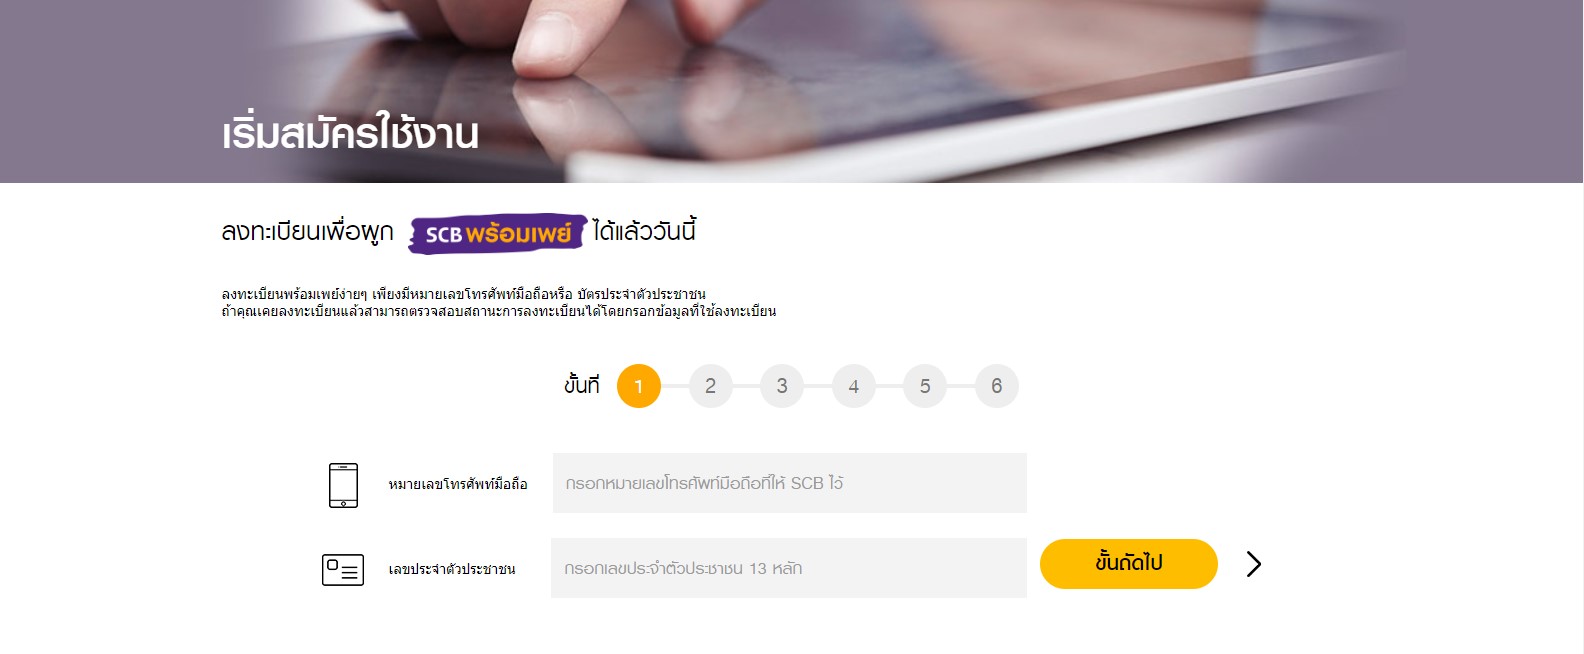 วิธีผูกพร้อมเพย์กับบัตรประชาชน ทุกธนาคาร เตรียมรับเงินบัตรสวัสดิการแห่งรัฐ  | Thaiger ข่าวไทย